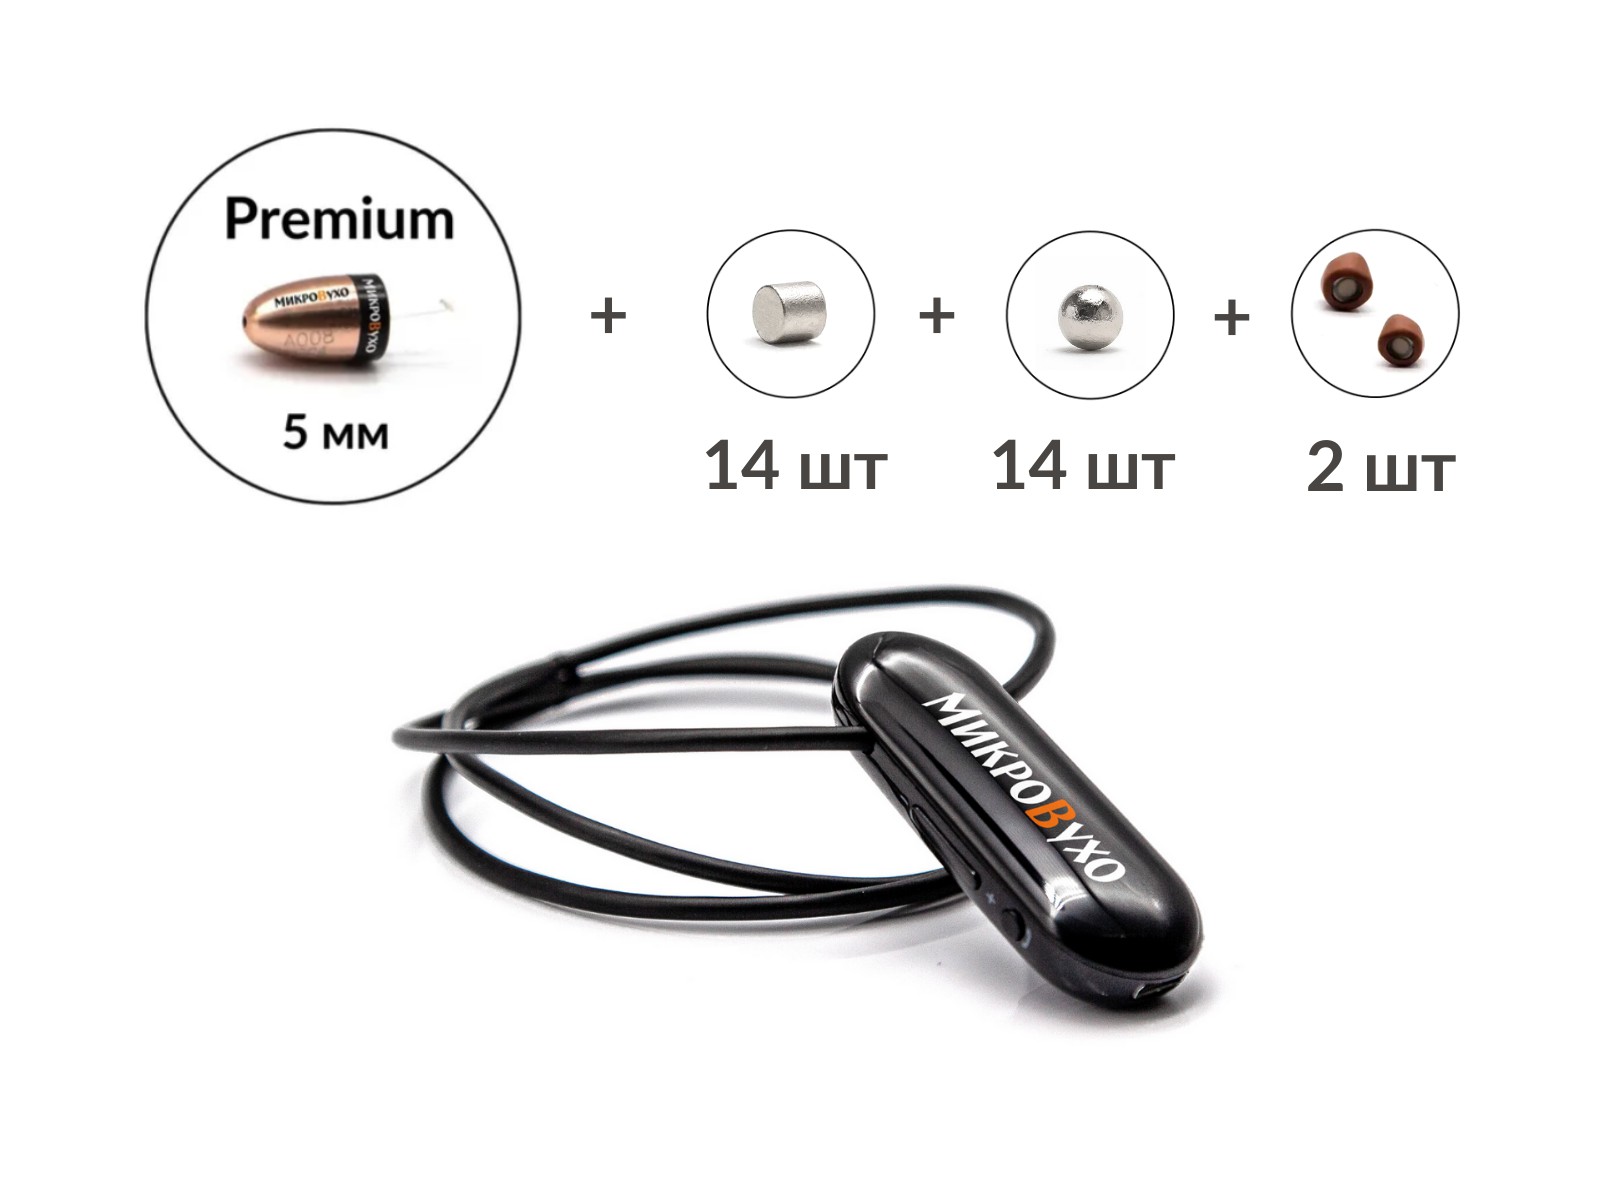 Универсальная гарнитура Bluetooth Pro с капсулой Premium и магнитами 2 мм - изображение